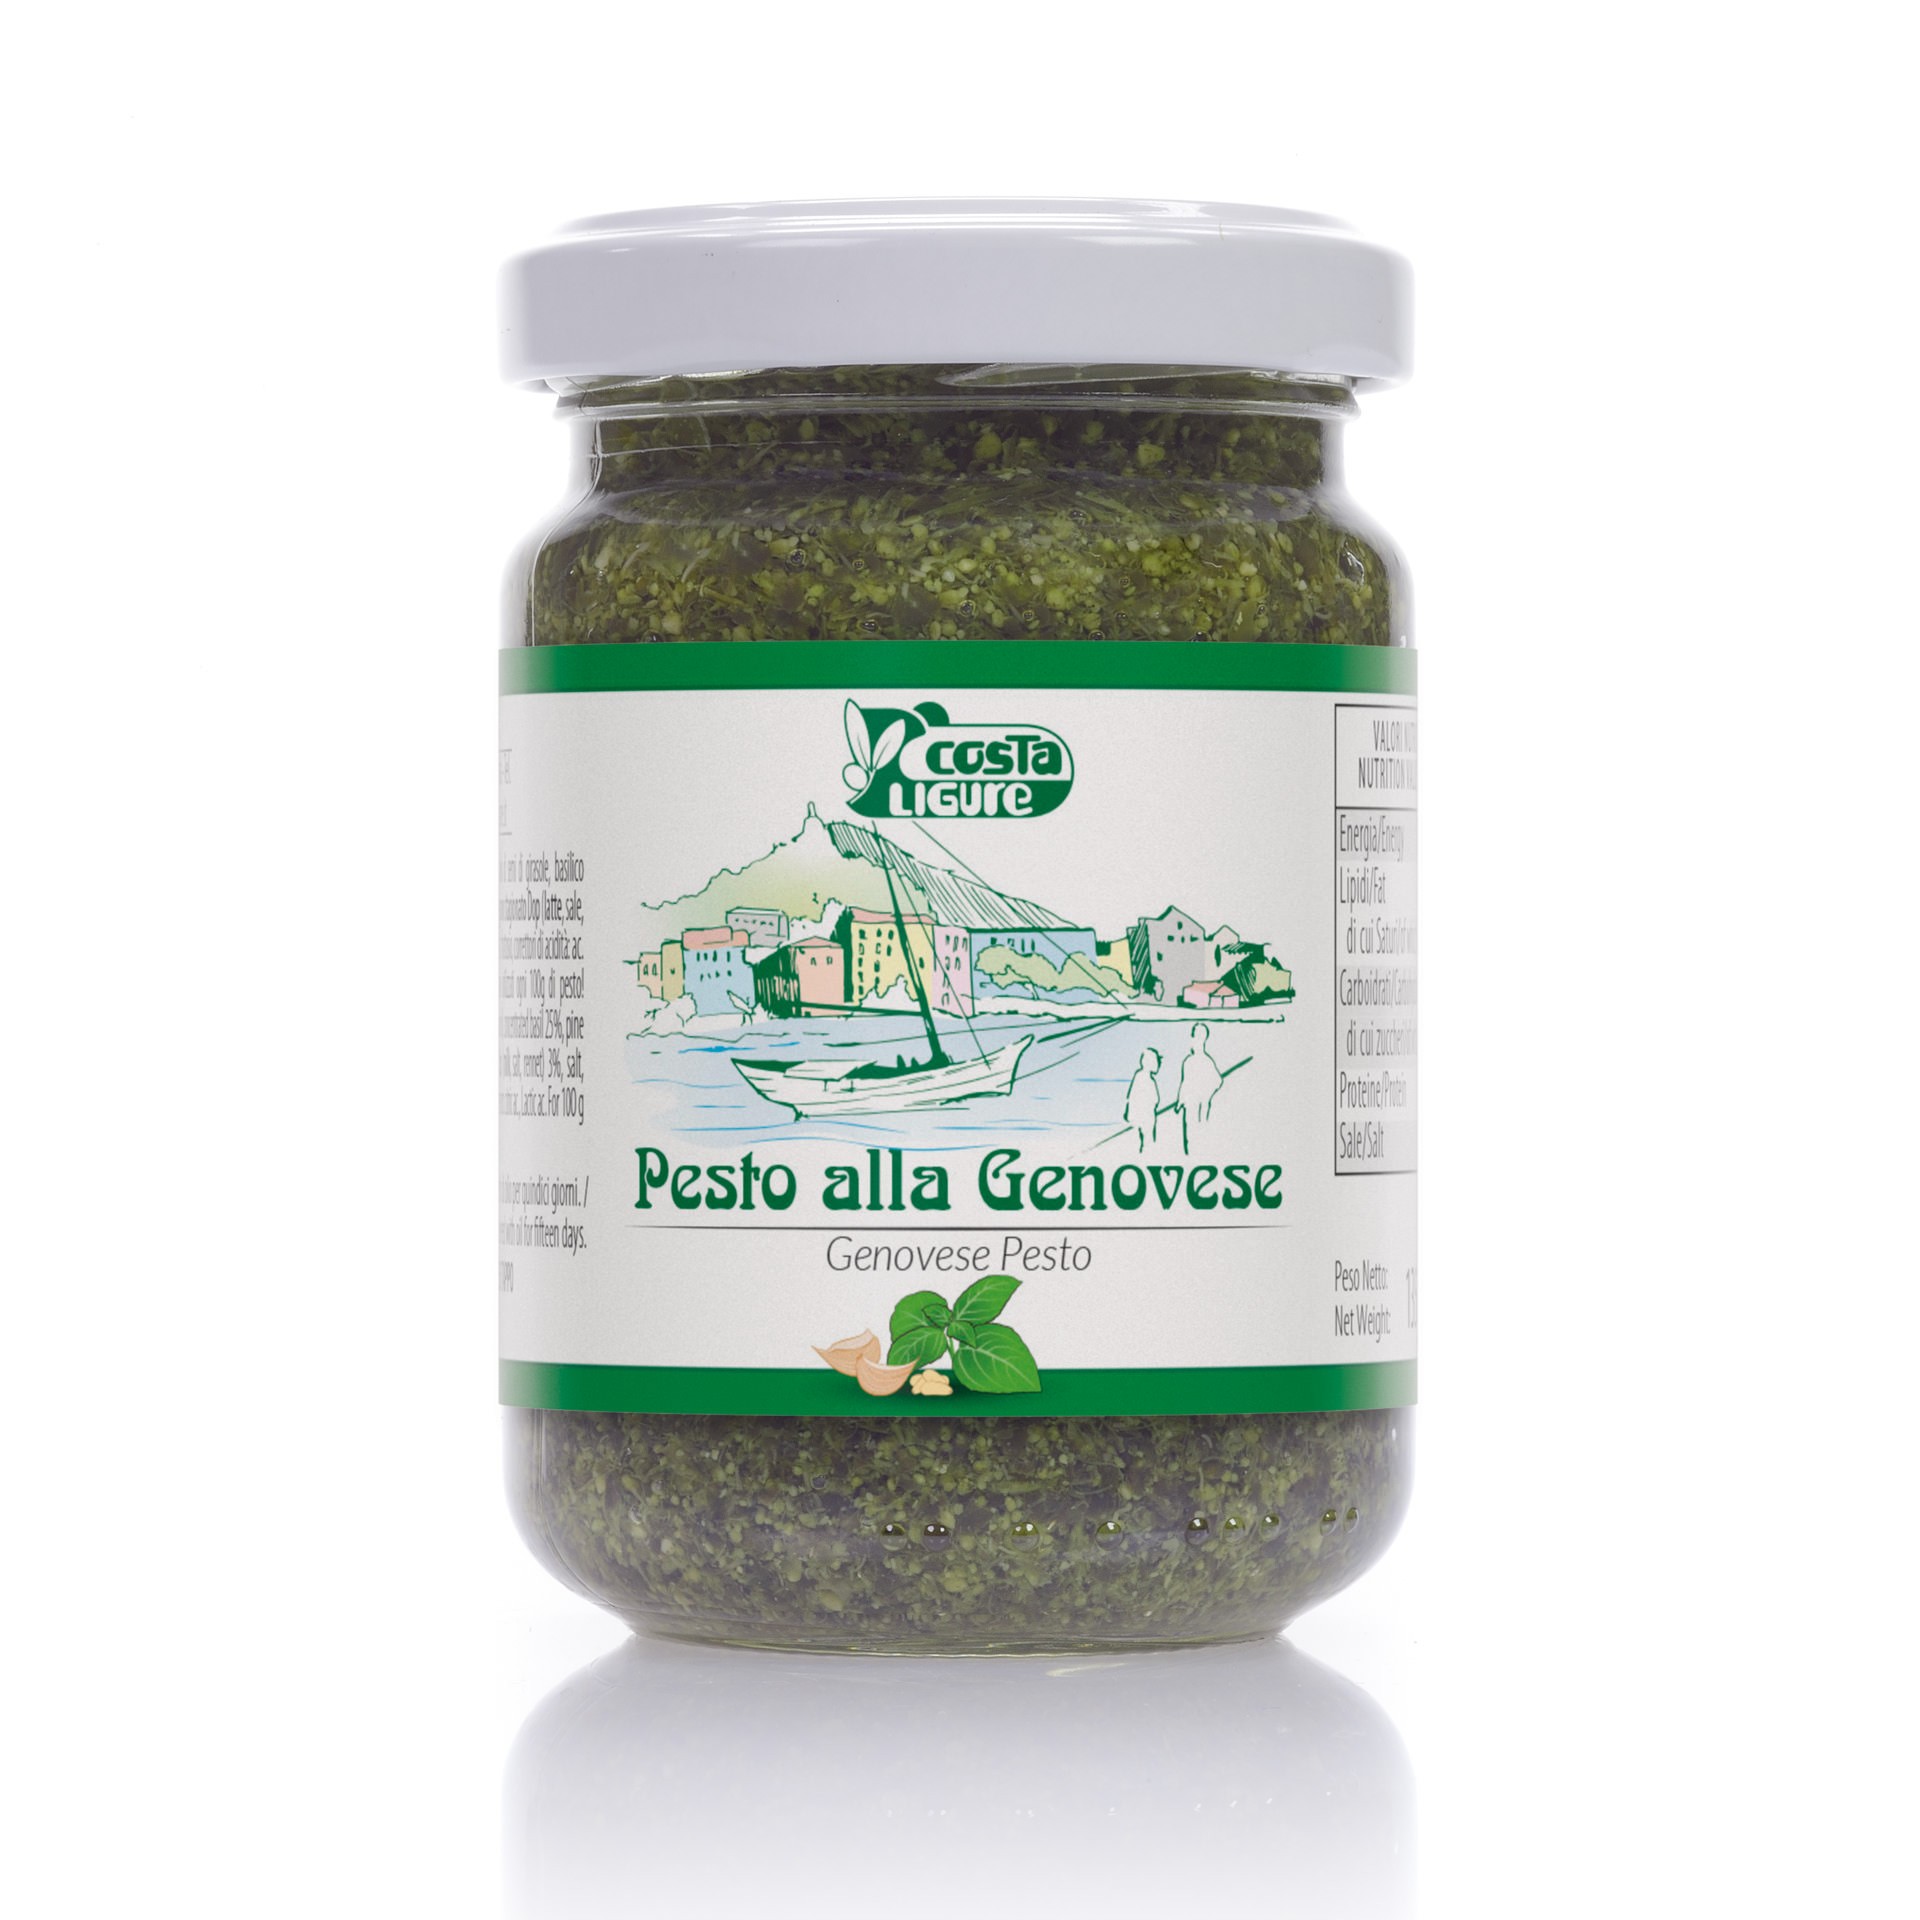 Costa Ligure – Pesto alla Genovese 135 g